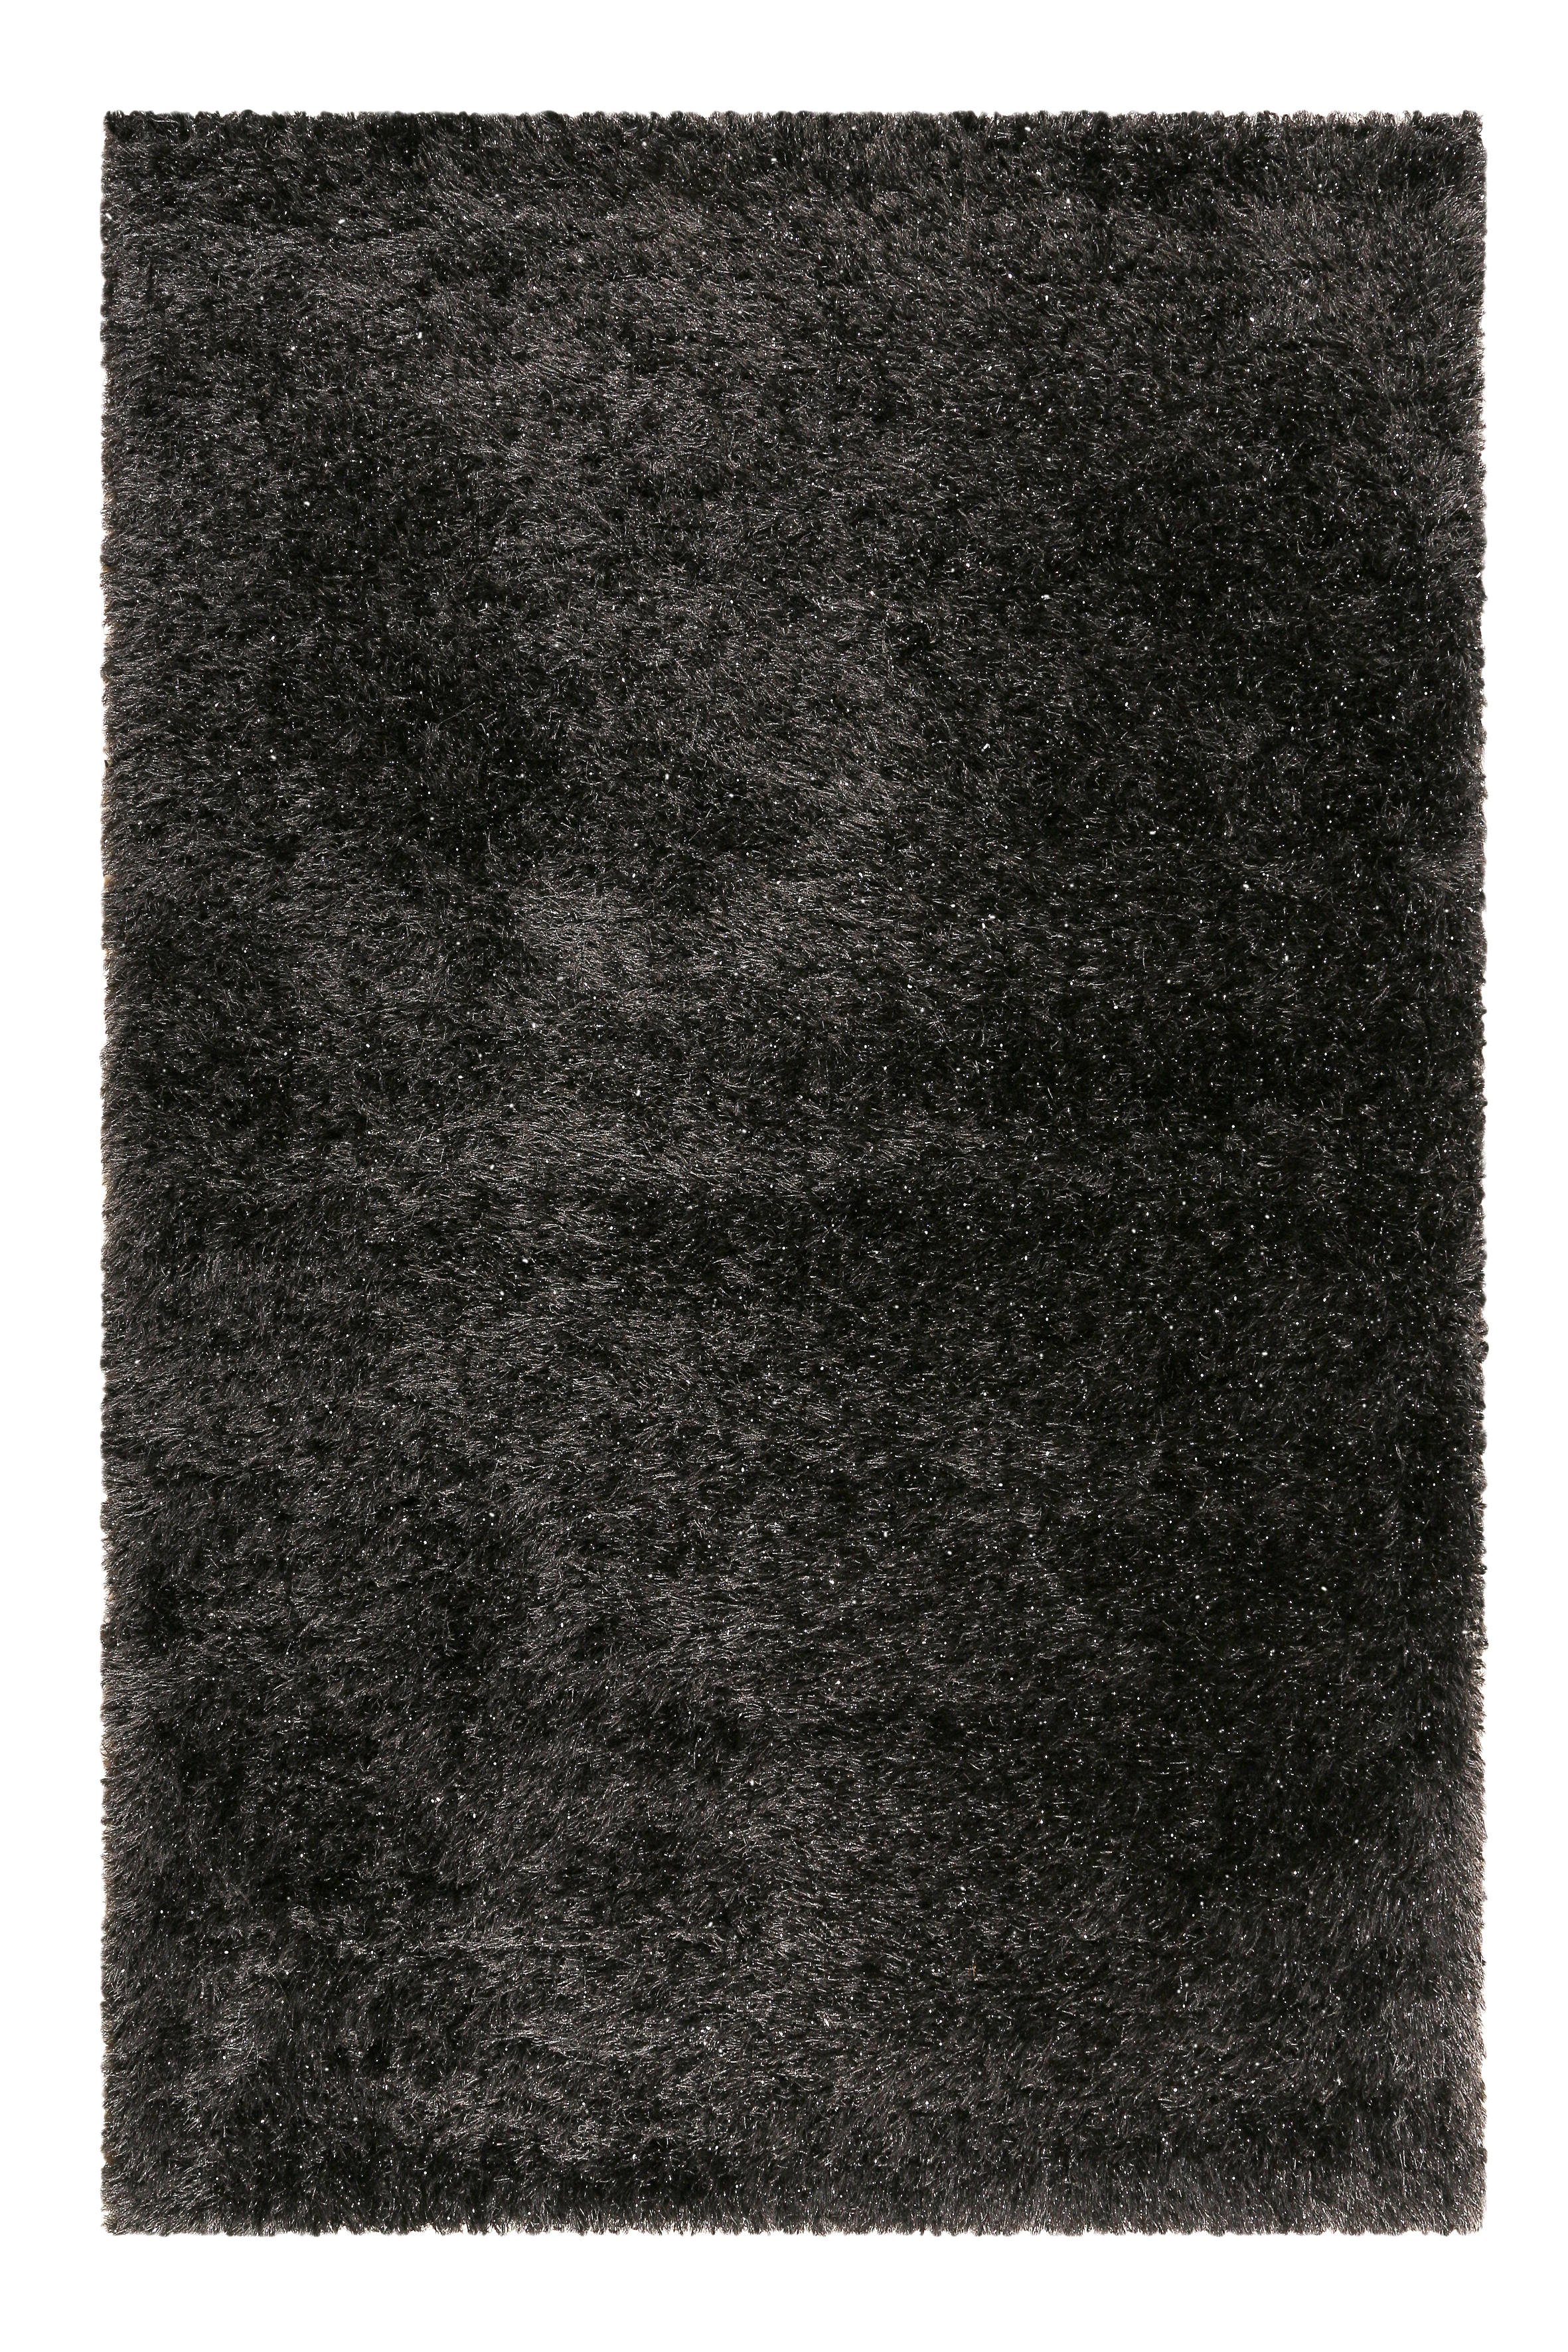 HOCHFLORTEPPICH  80/150 cm  gewebt  Schwarz   - Schwarz, KONVENTIONELL, Textil (80/150cm) - Novel